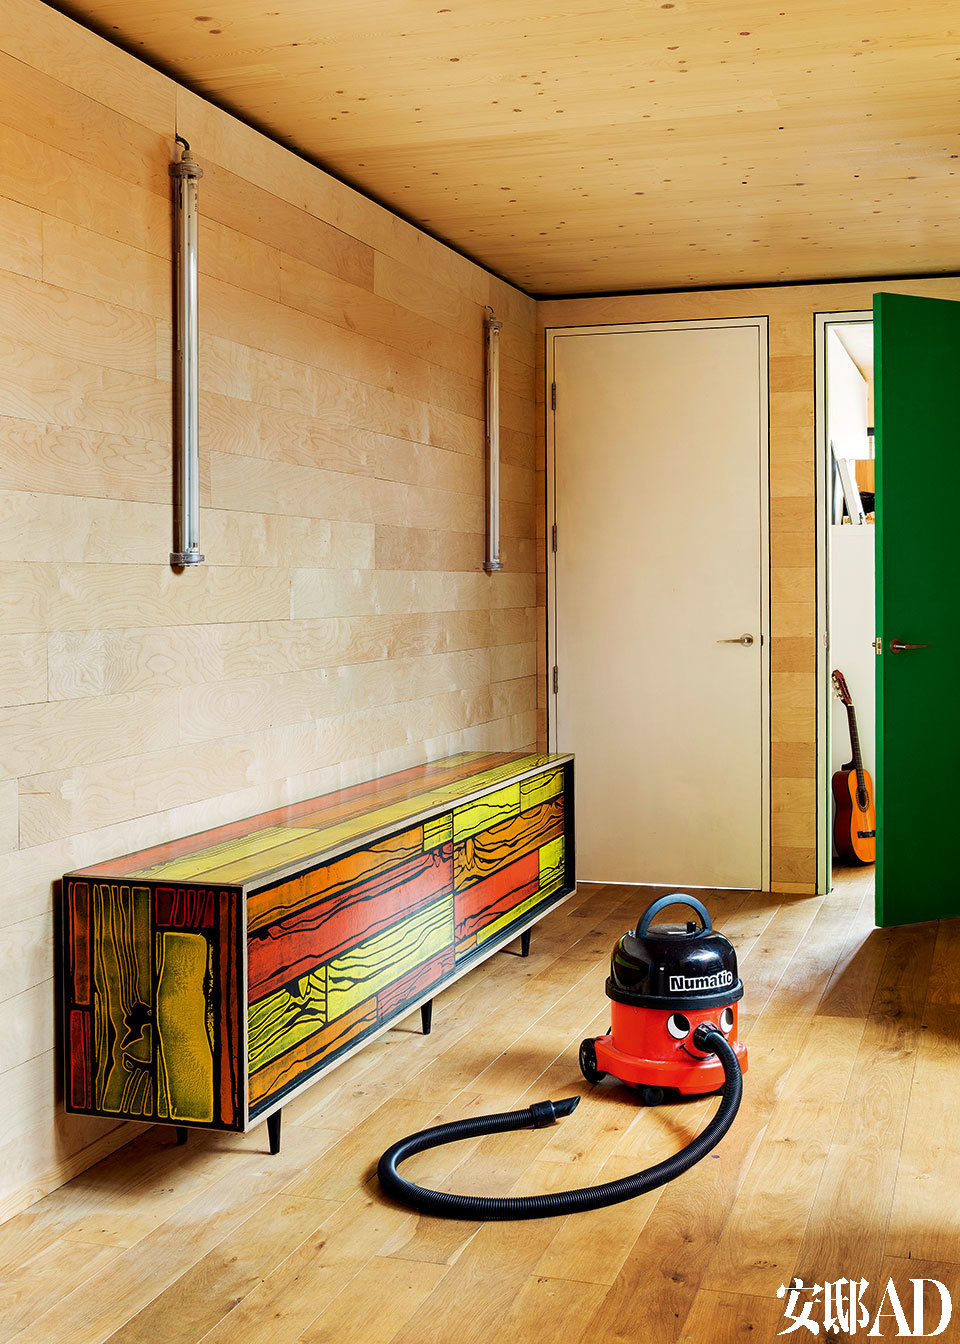 浴室所用的材料和元素都强调着工业特质，镜子里映出通向楼上的彩色木质阶梯，十分俏皮。圆形天窗则带入柔和的自然光线。